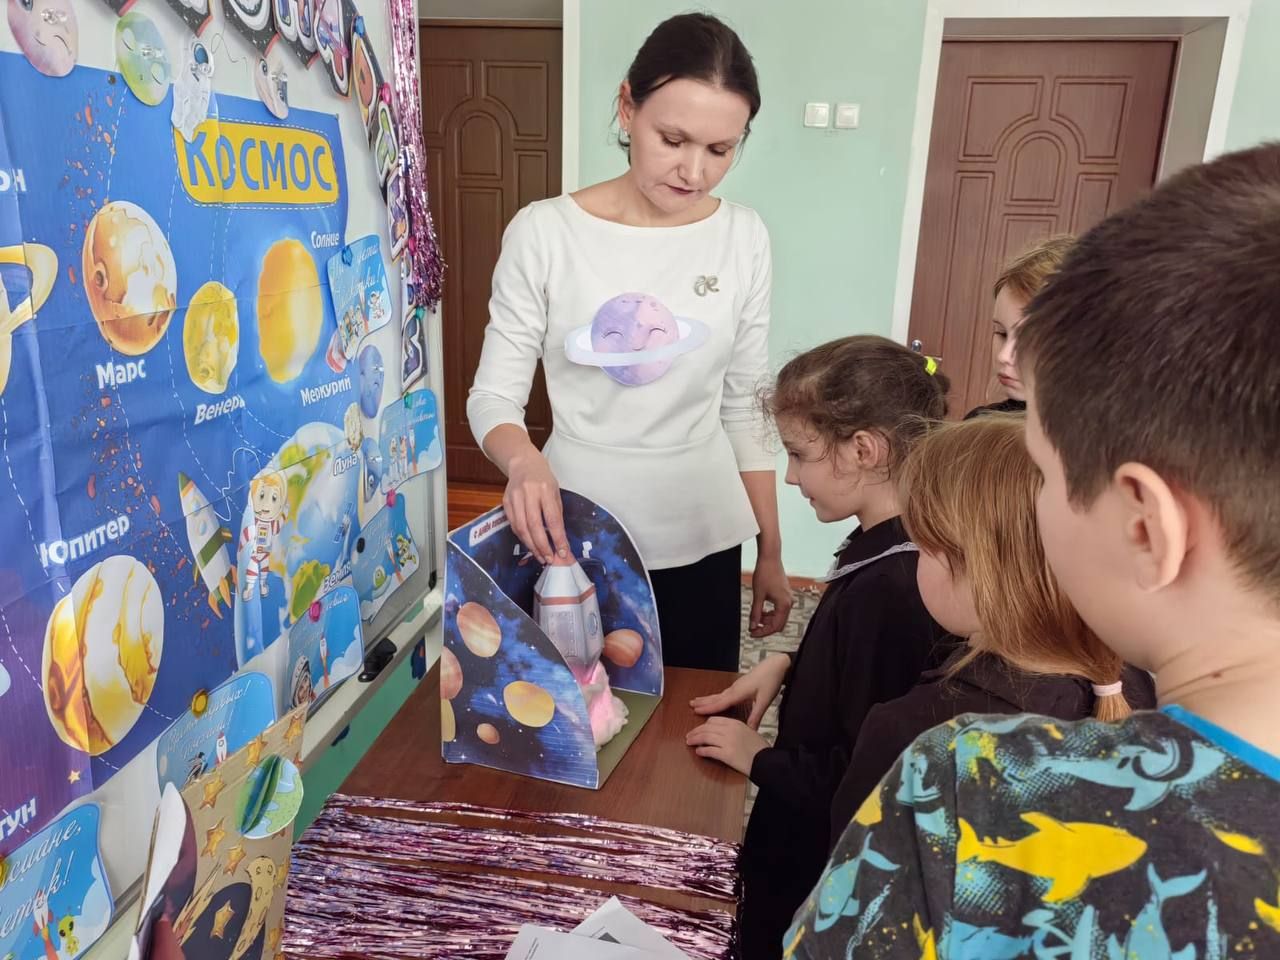 Квест — игра ко Дню космонавтики прошла для учеников Орловской школы